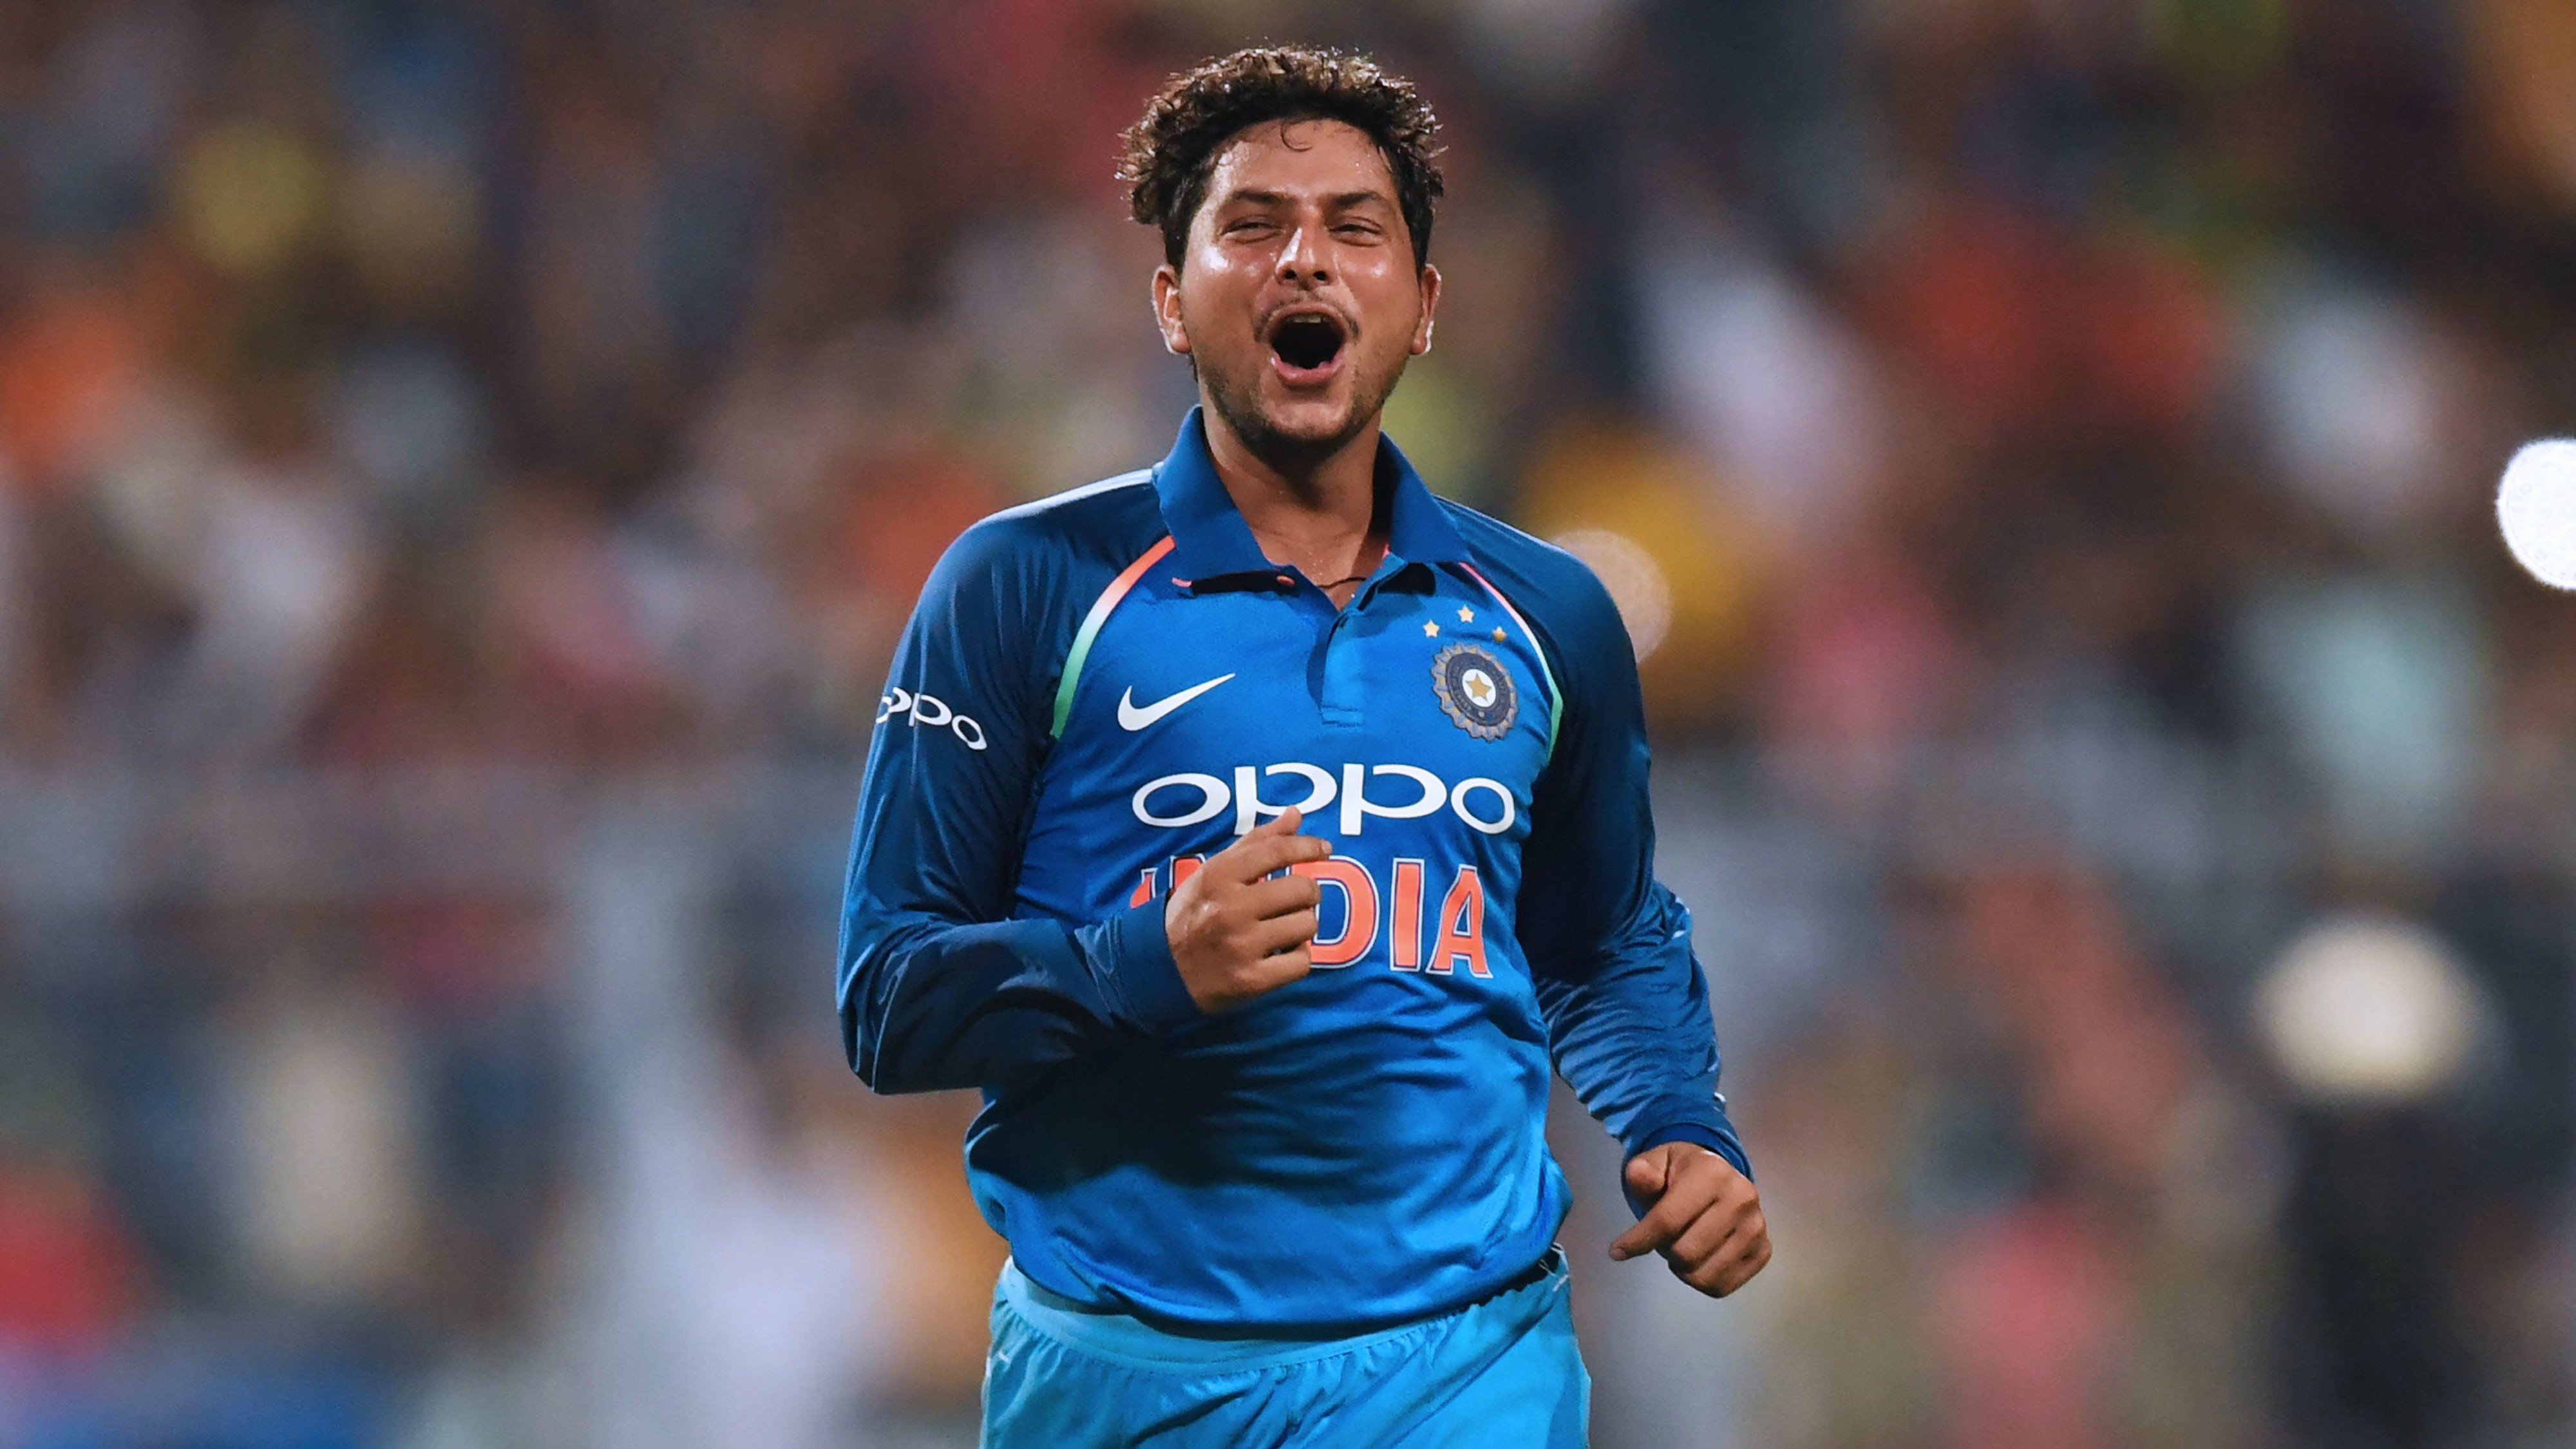 न्यूजीलैंड के खिलाफ पहले वनडे के लिए 11 सदस्यी भारतीय टीम, पहली बार न्यूज़ीलैंड के खिलाफ खेलता नजर आएगा ये खिलाड़ी! 9